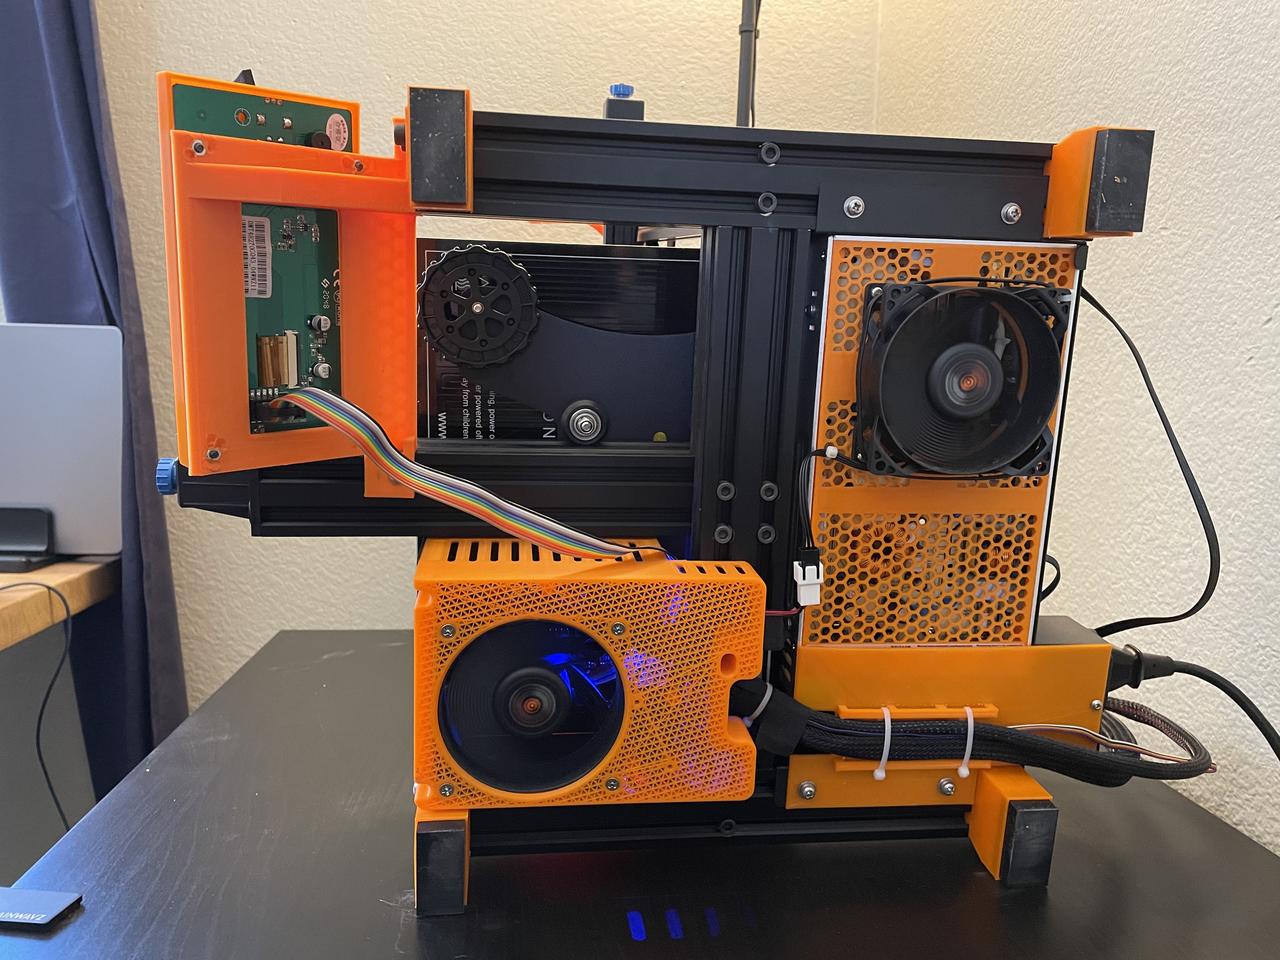 Ender 3 V2 3D printer, heavily modified, underside view